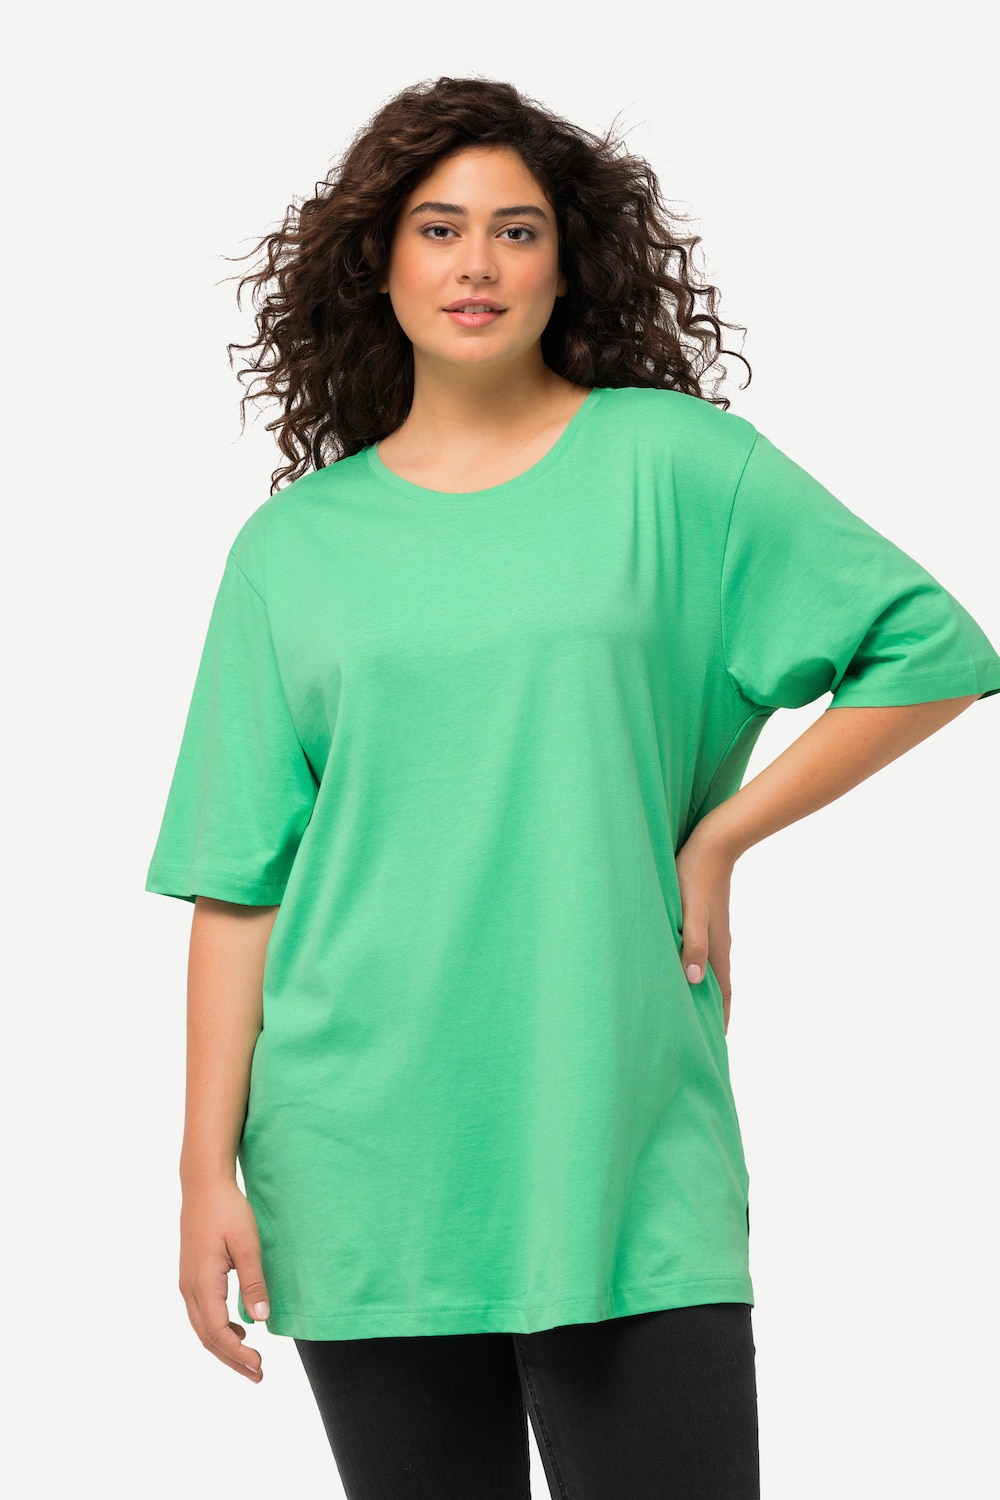 Grote Maten T-Shirt, Dames, turquoise, Maat: 46/48, Ulla Popken